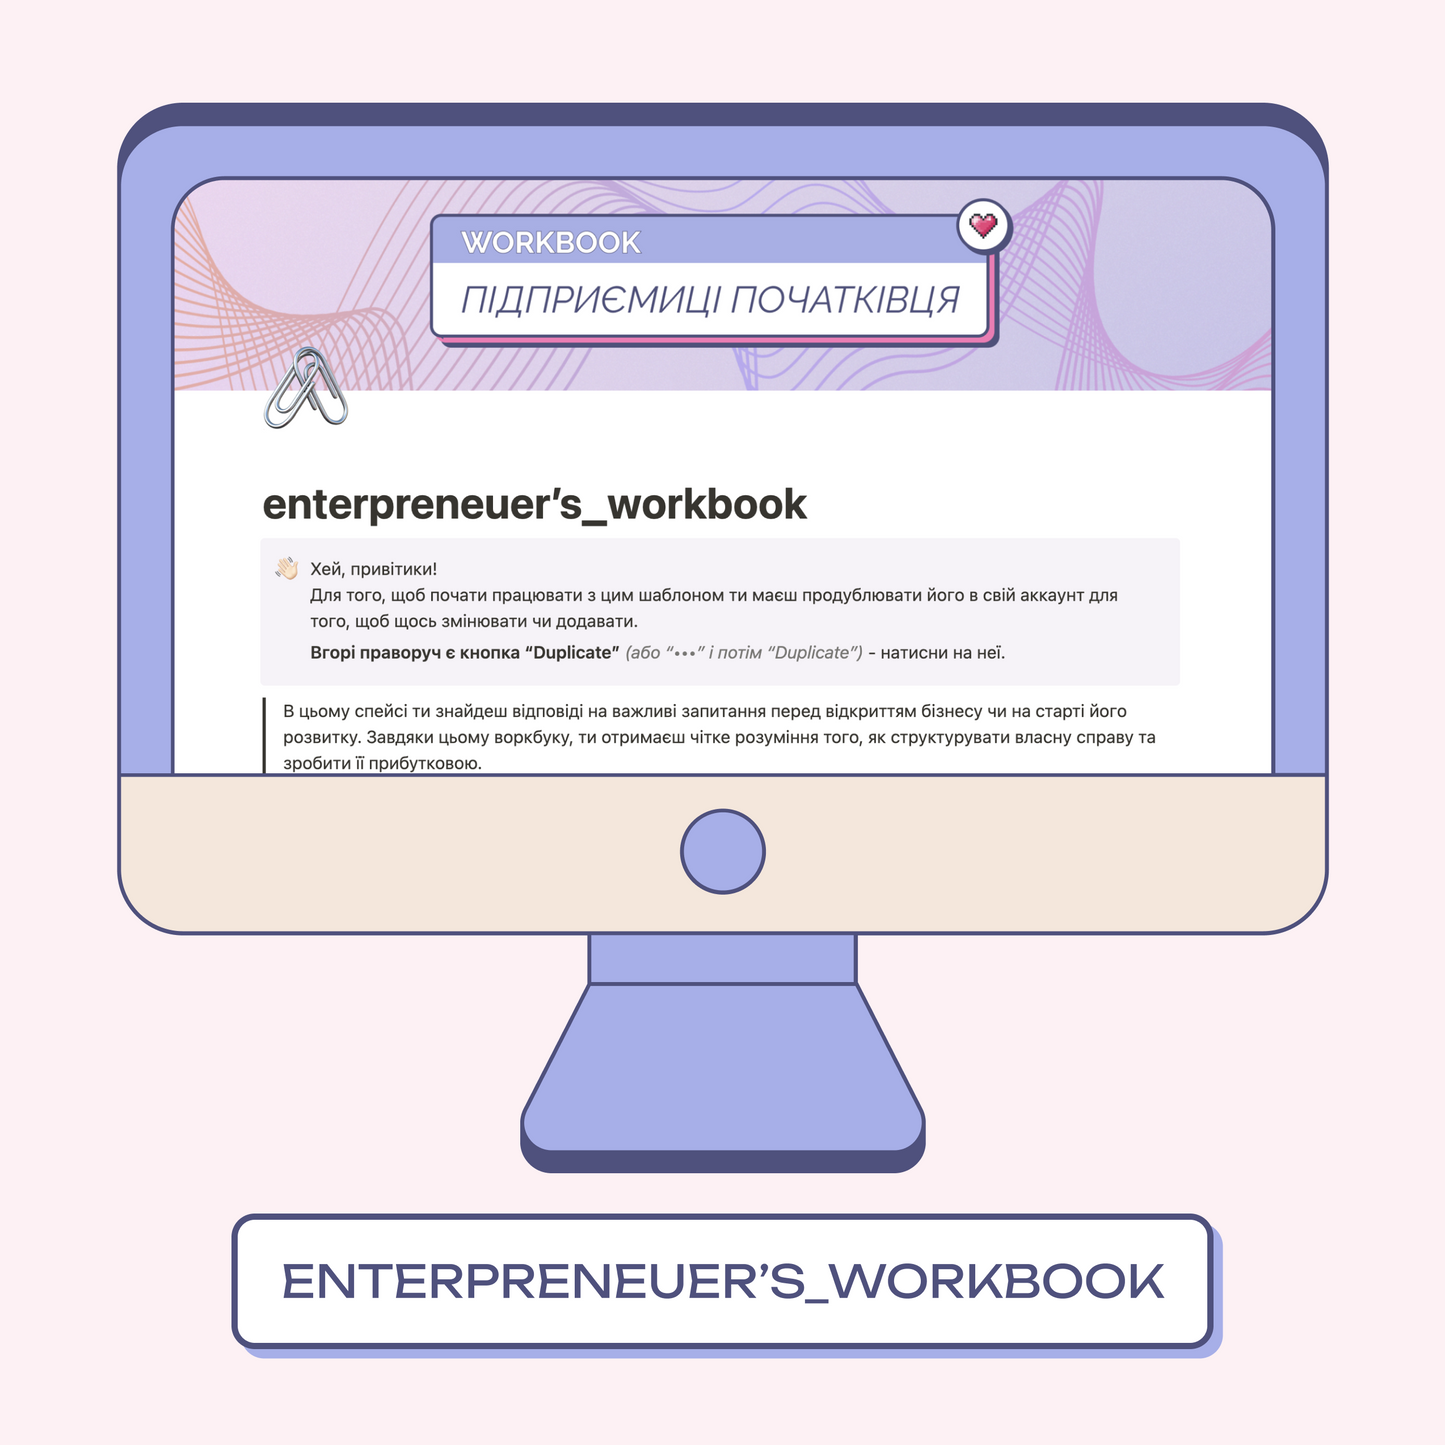 enterpreneuer’s_workbook